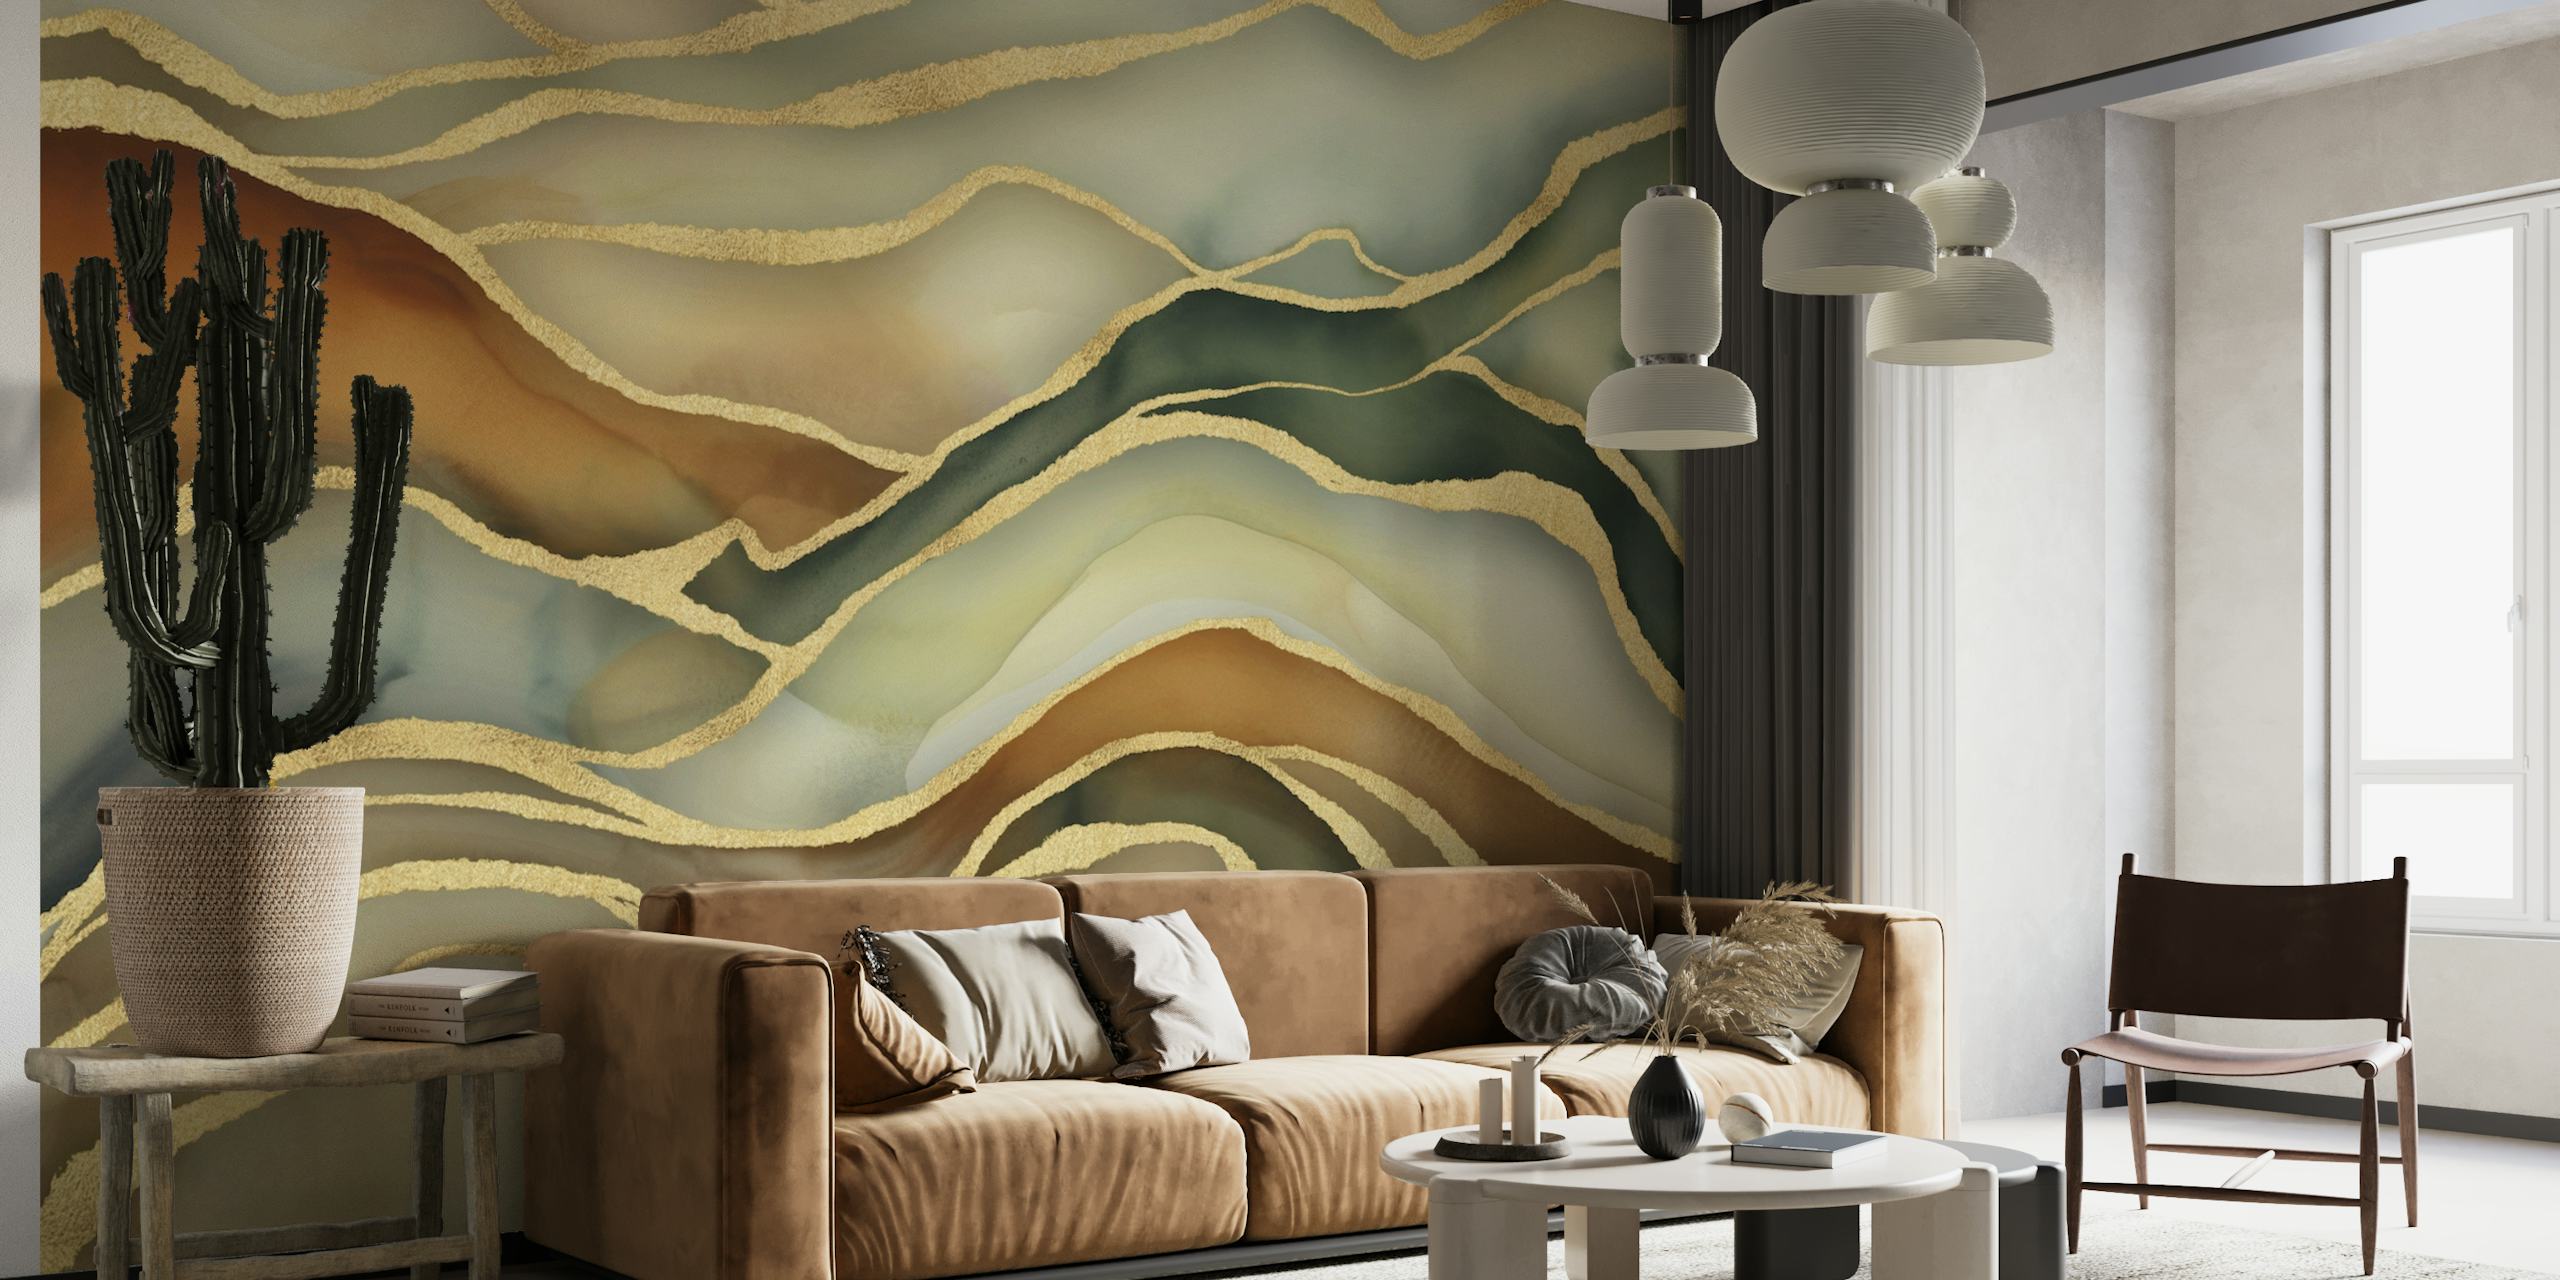 Apstraktni mramorni pejzažni zidni mural u smeđim, zelenim i zlatnim nijansama